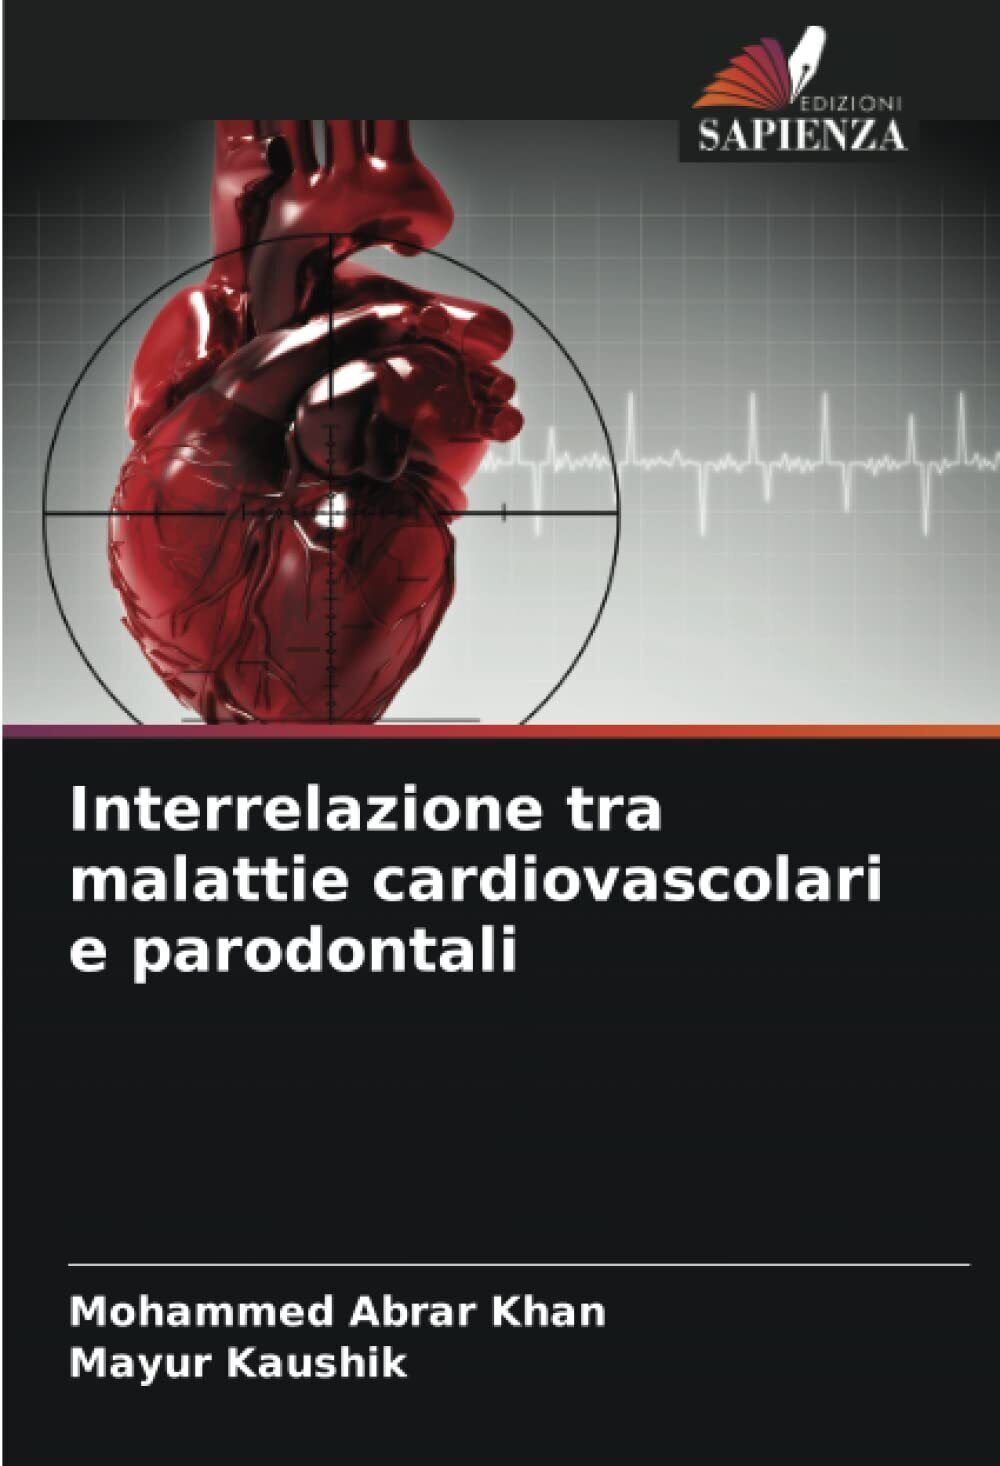 Interrelazione tra malattie cardiovascolari e parodontali - Sapienza, 2022